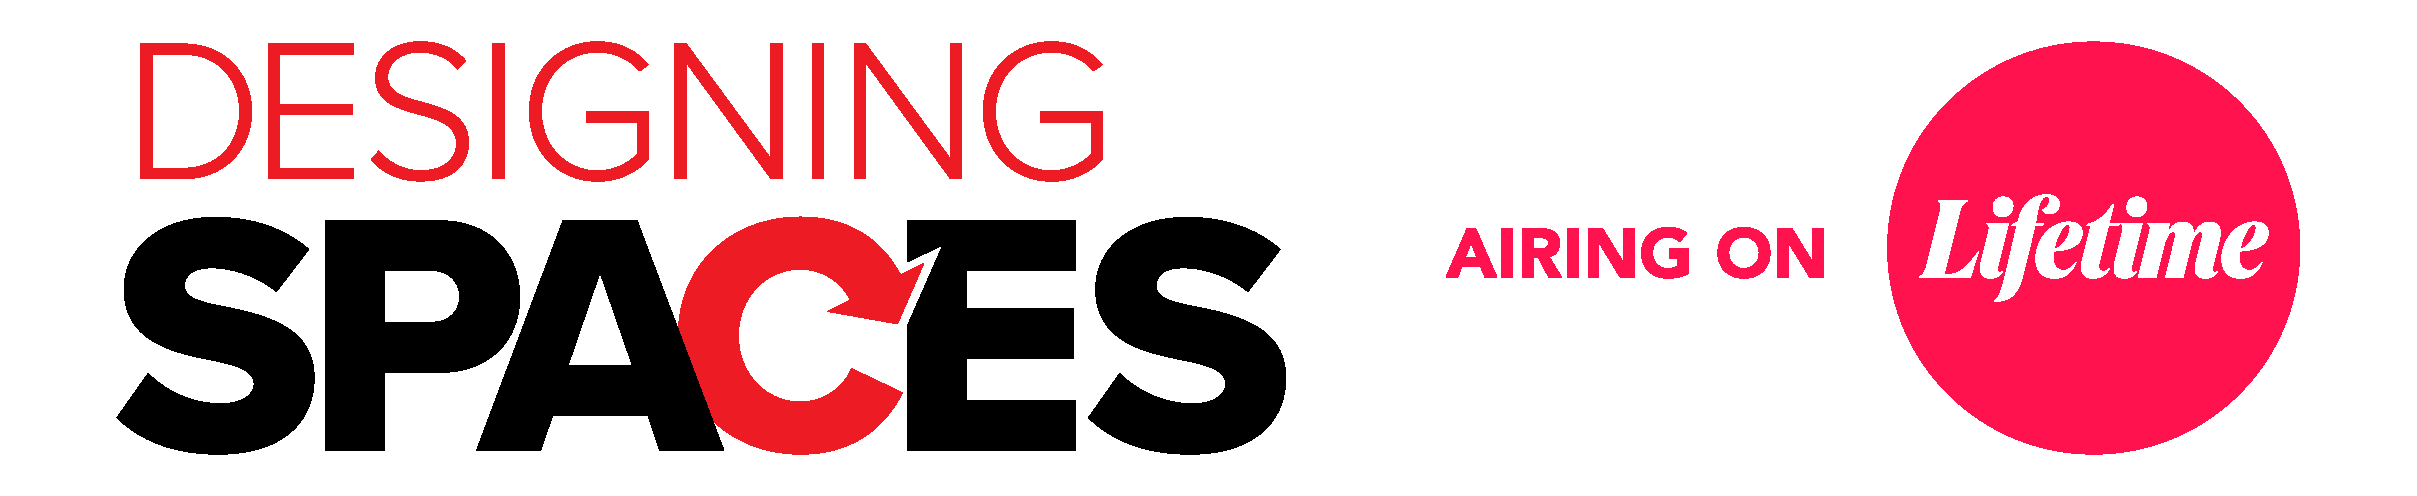 Design Spaces logo